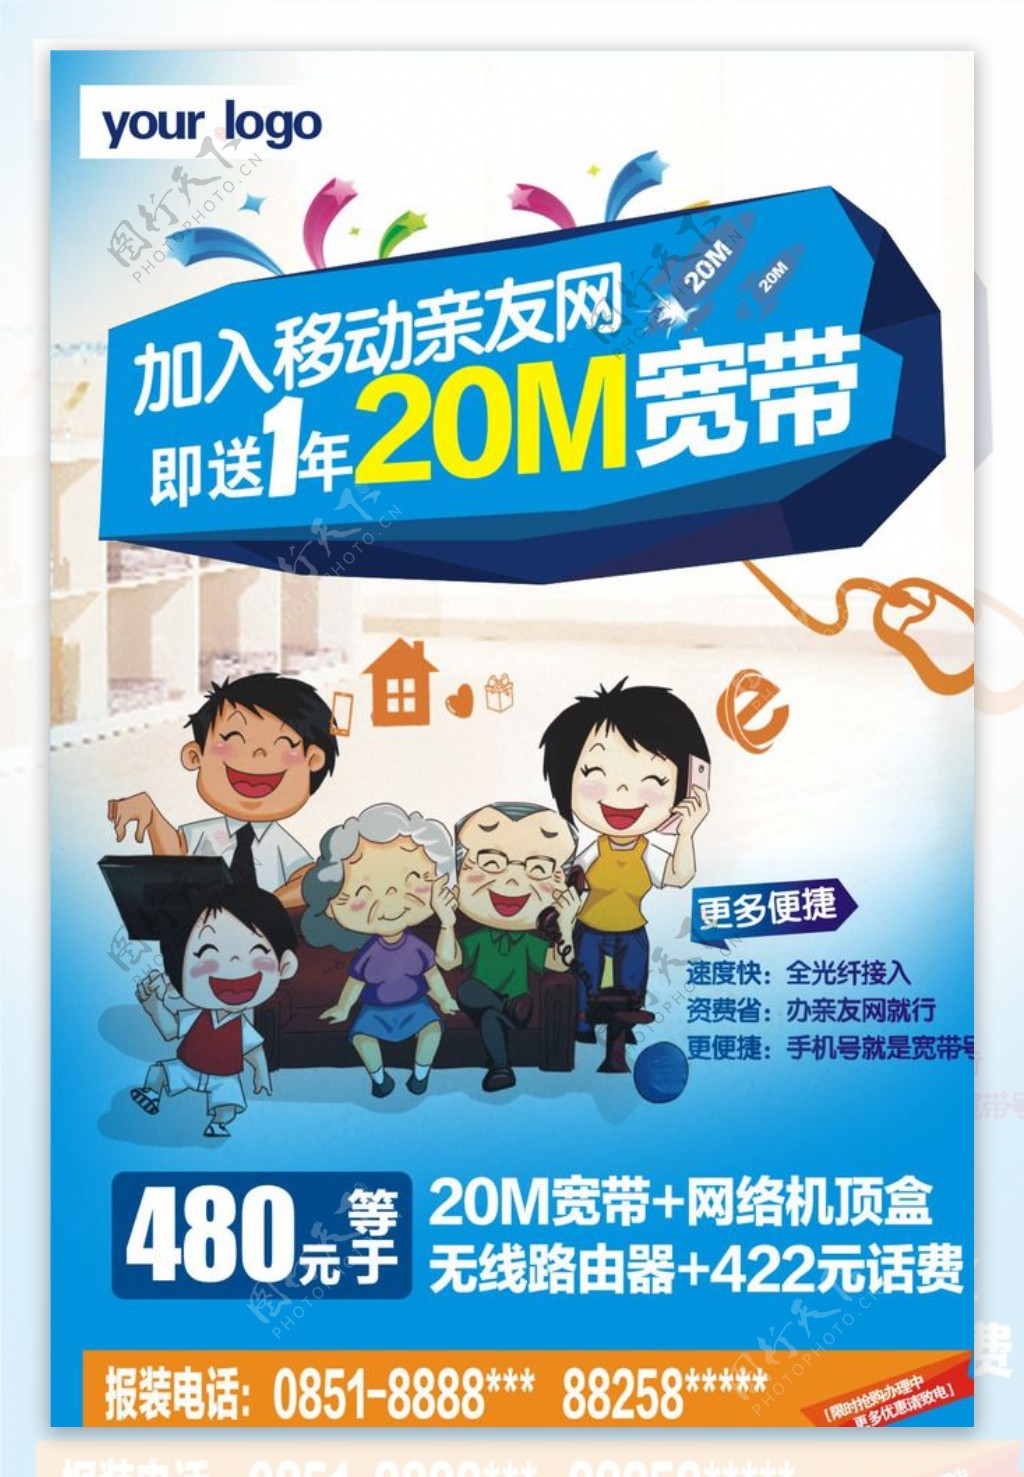 中国移动宽带海报和家庭